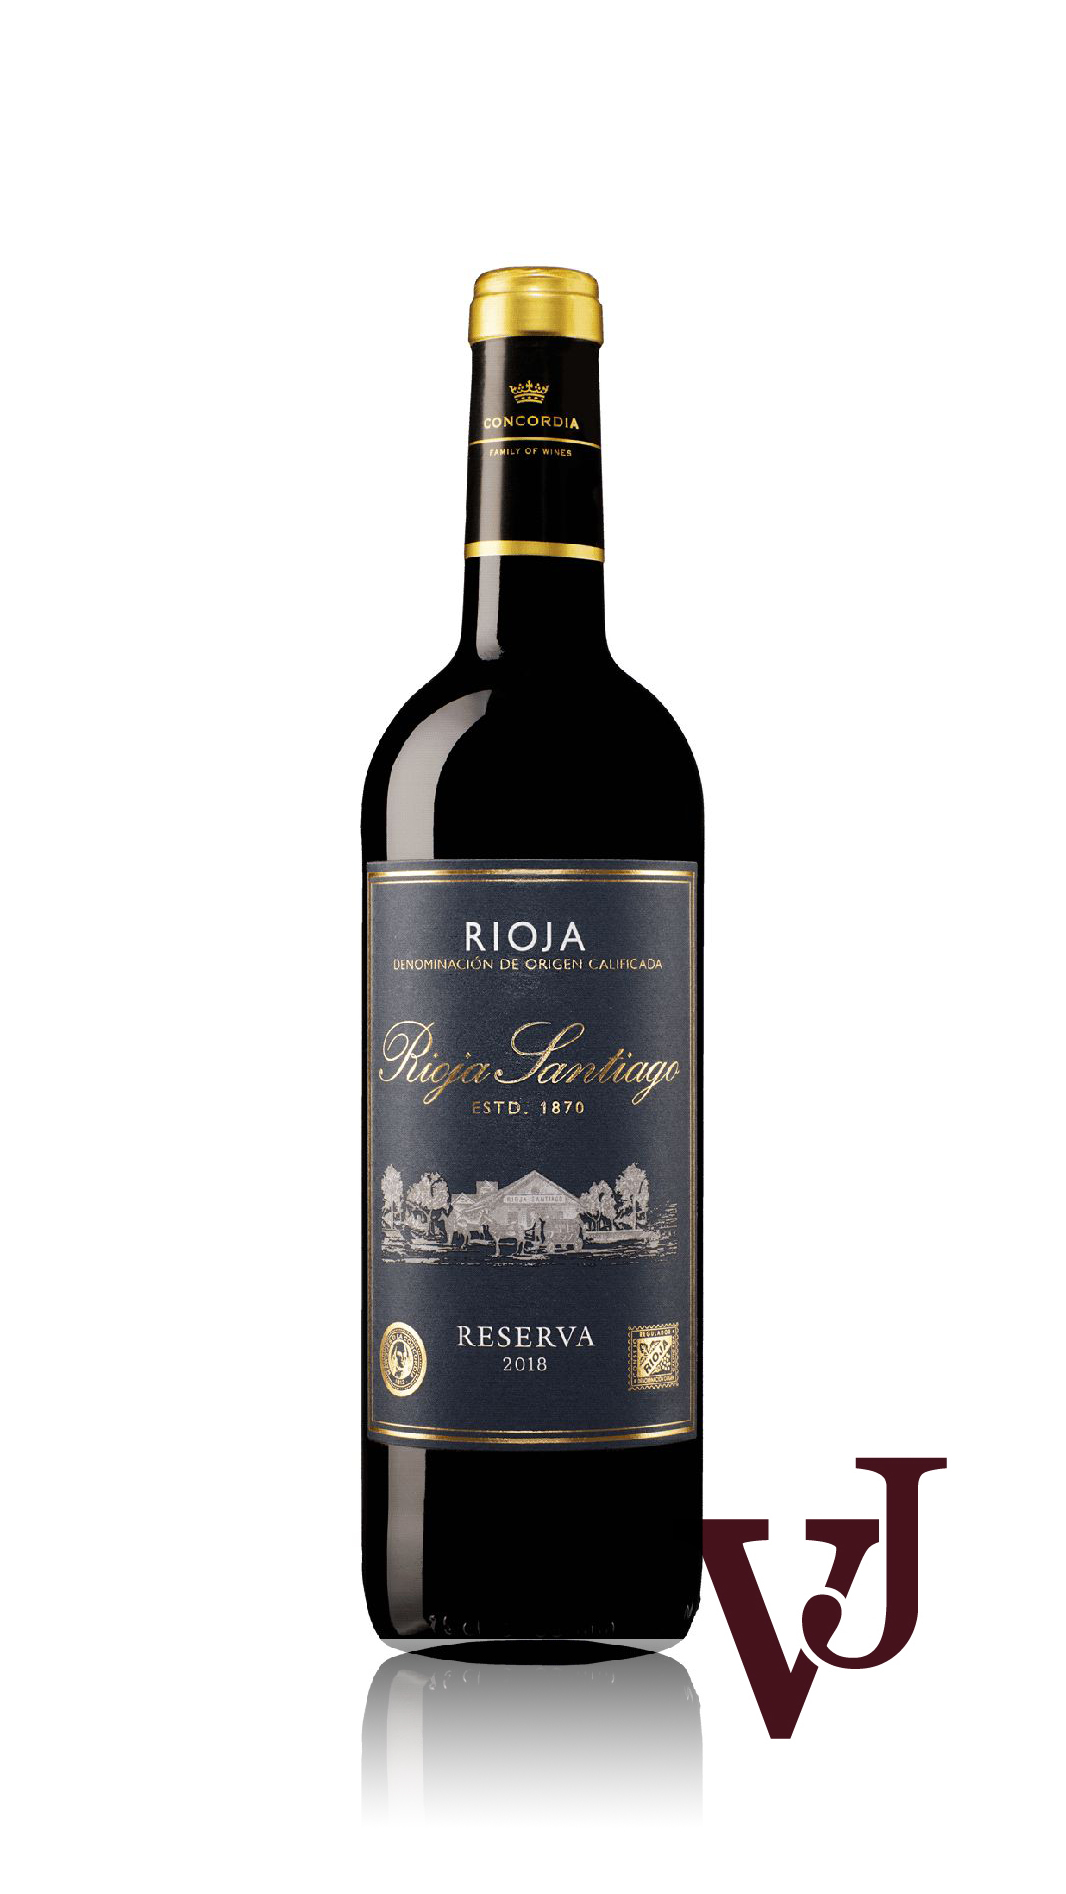 Rött Vin - Rioja Santiago Reserva 2018 artikel nummer 7034701 från producenten Marques de la Concordia Family of Wines från området Spanien